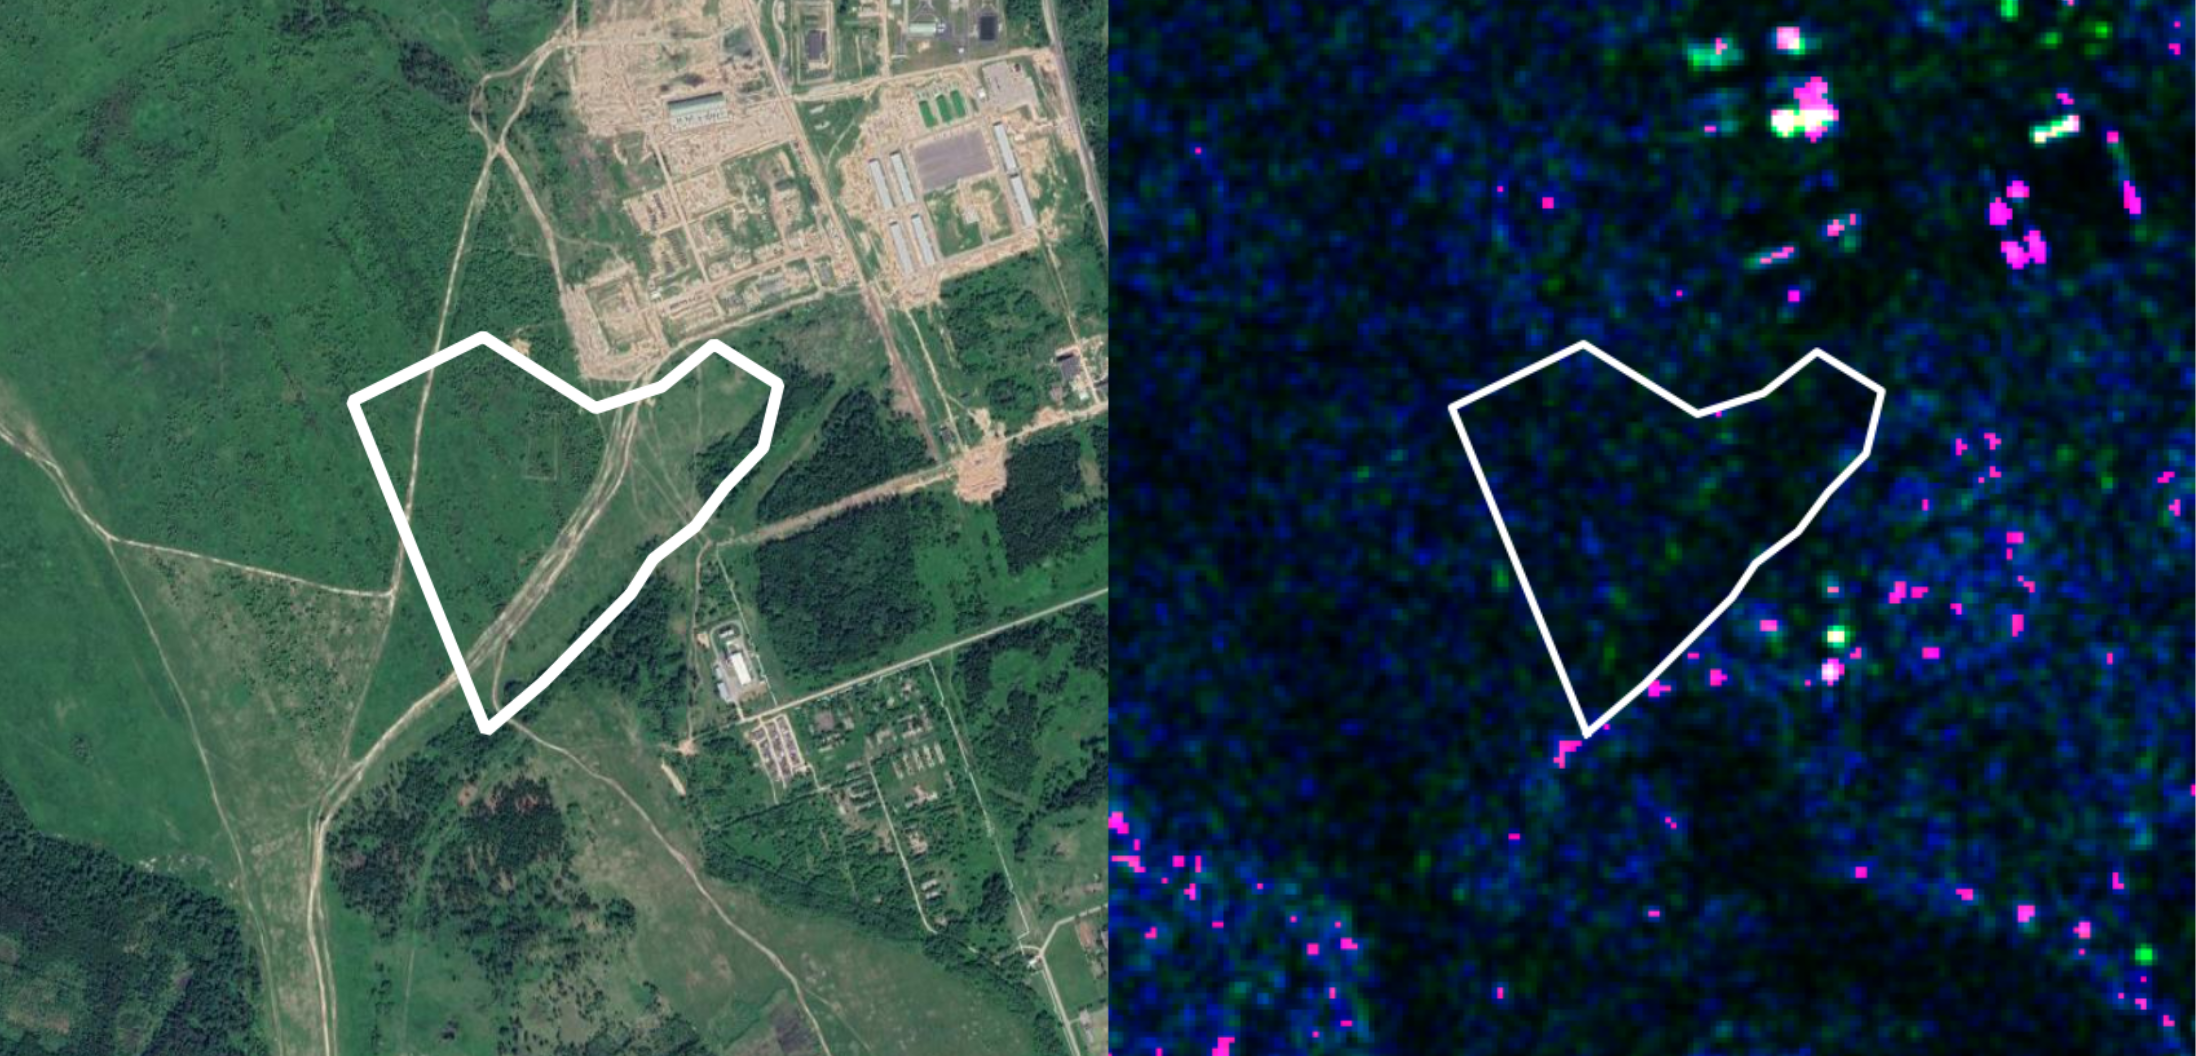 Ліворуч – зображення з Google Satellite тої ж території що вище, праворуч – дані від радарного сенсору Sentinel-1 за минулий період, коли техніки ще не було.